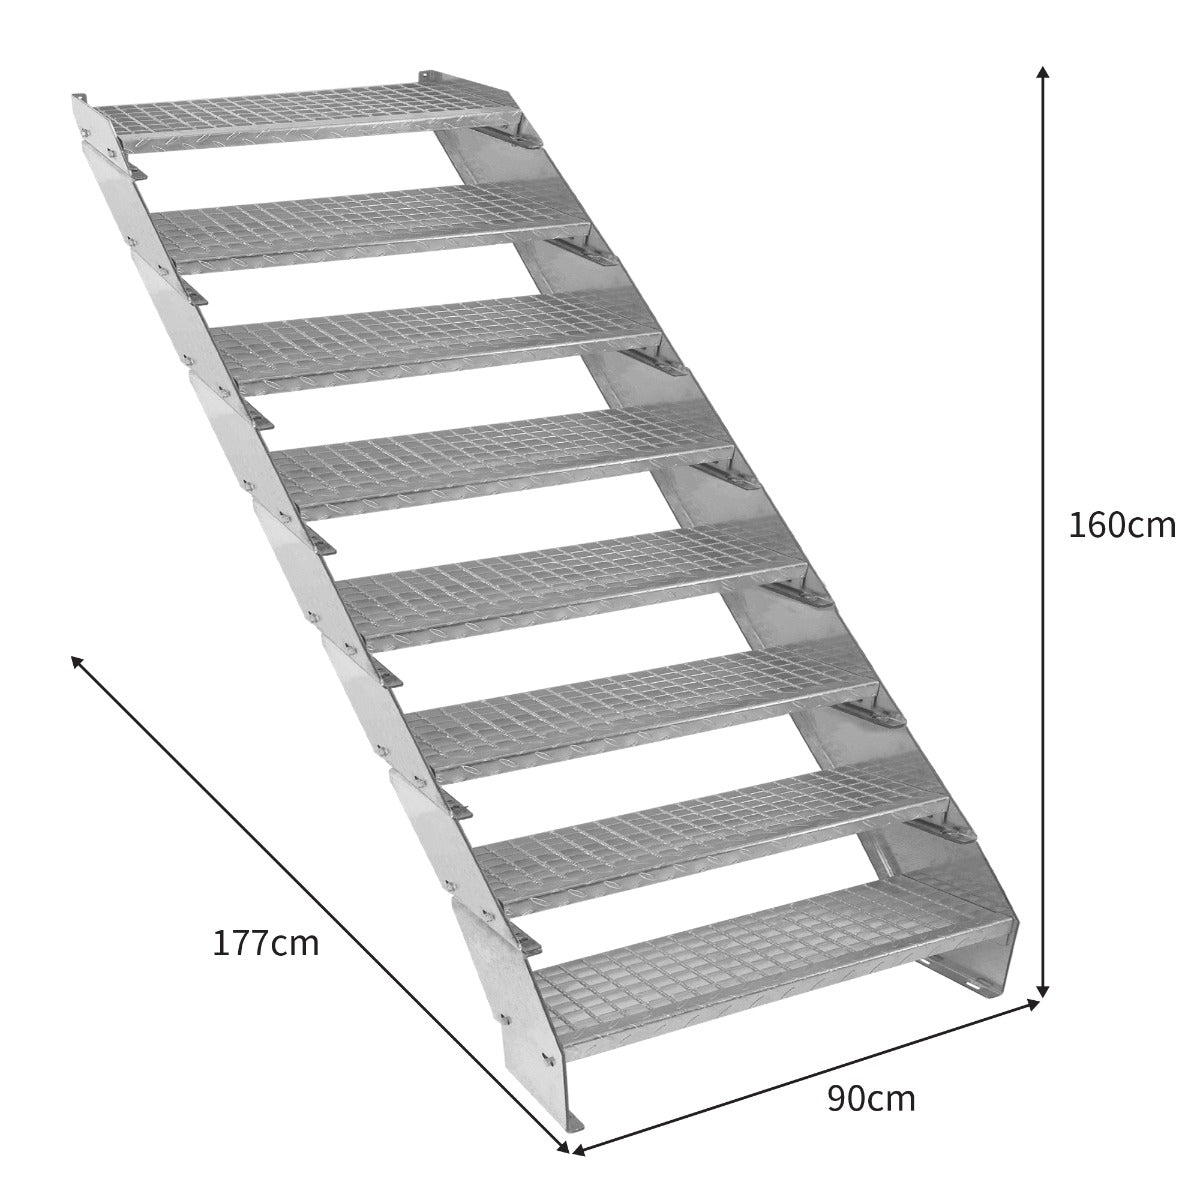 Scala zincata regolabile a 8 elementi - larghezza 900 mm